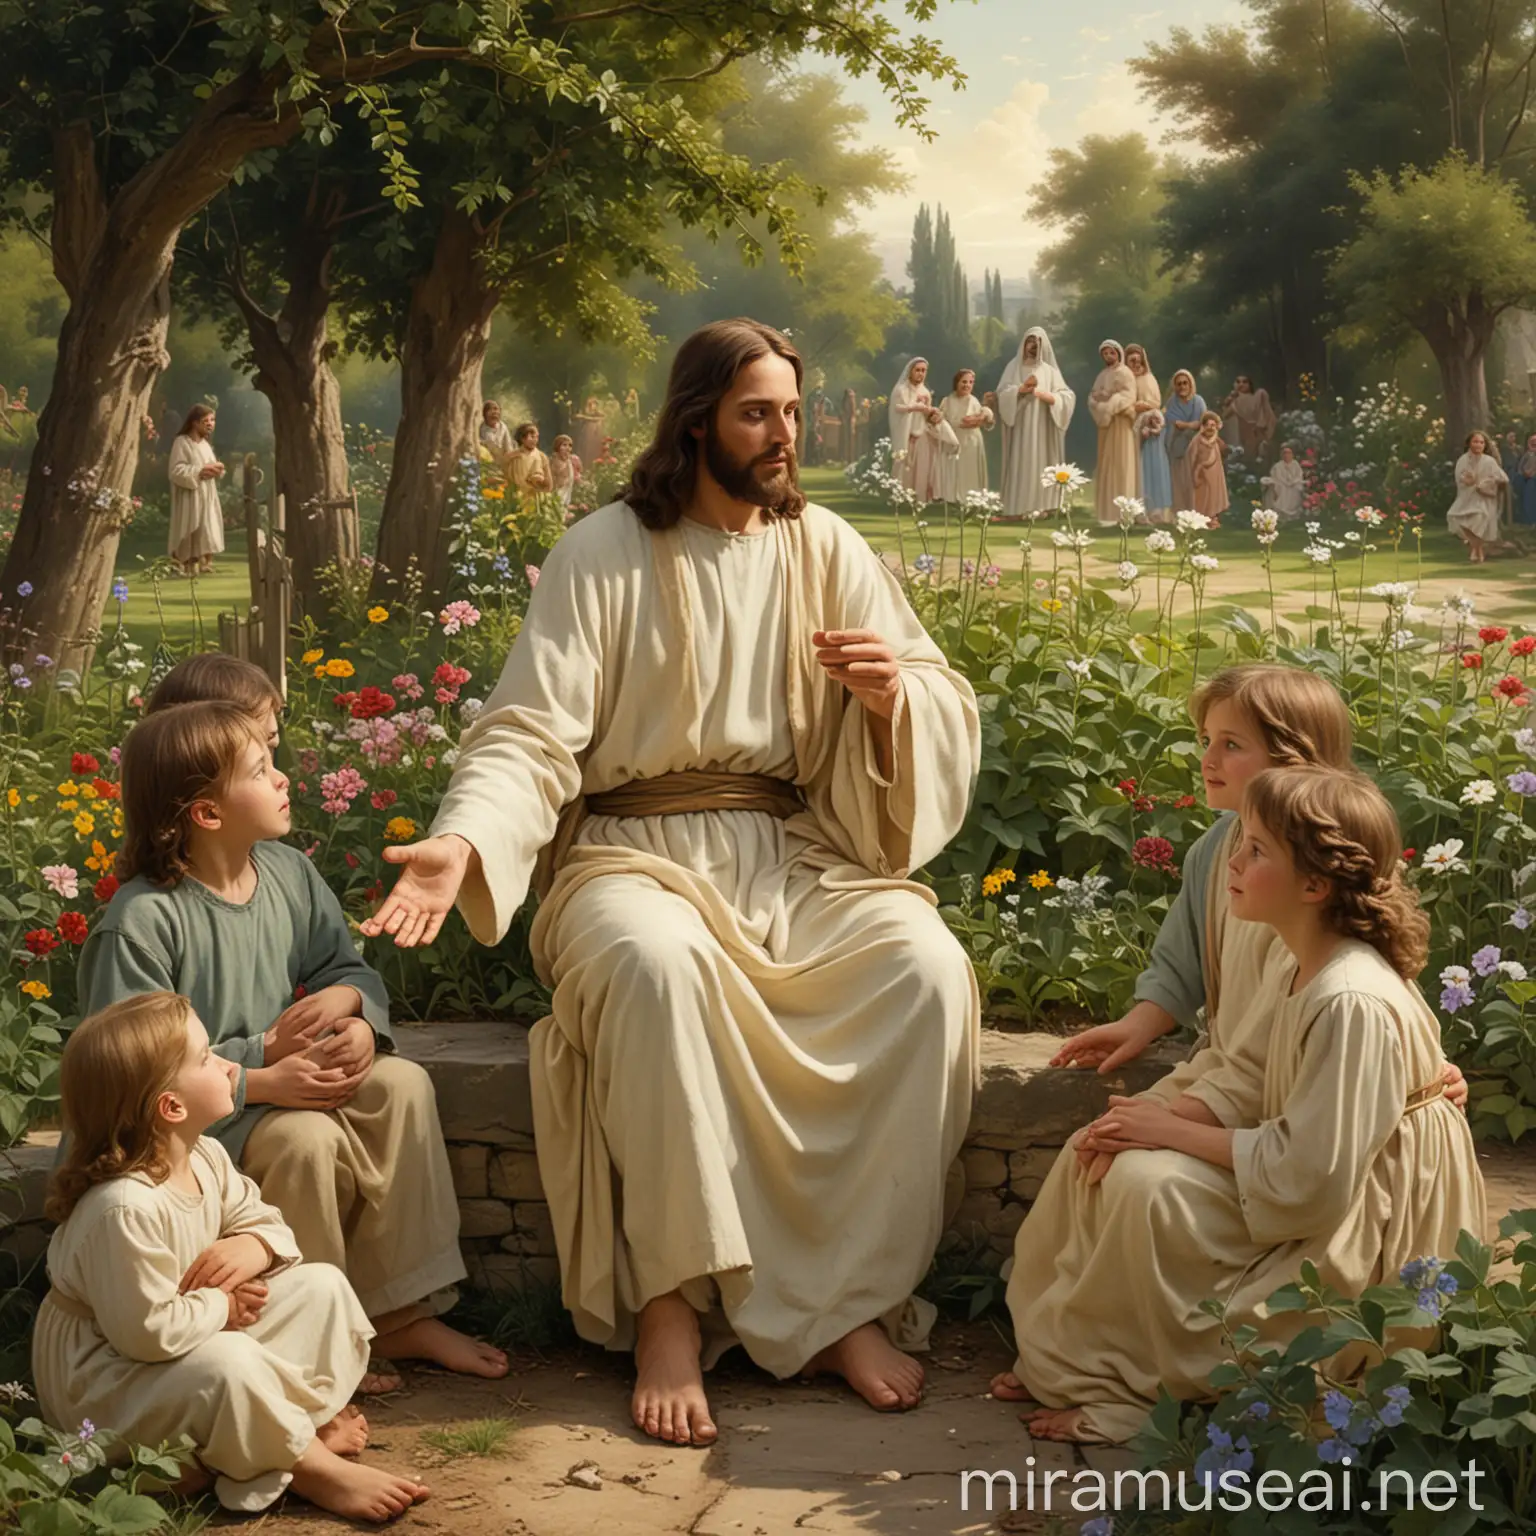 Jesus Christ Teaching Children in a Serene Garden Setting